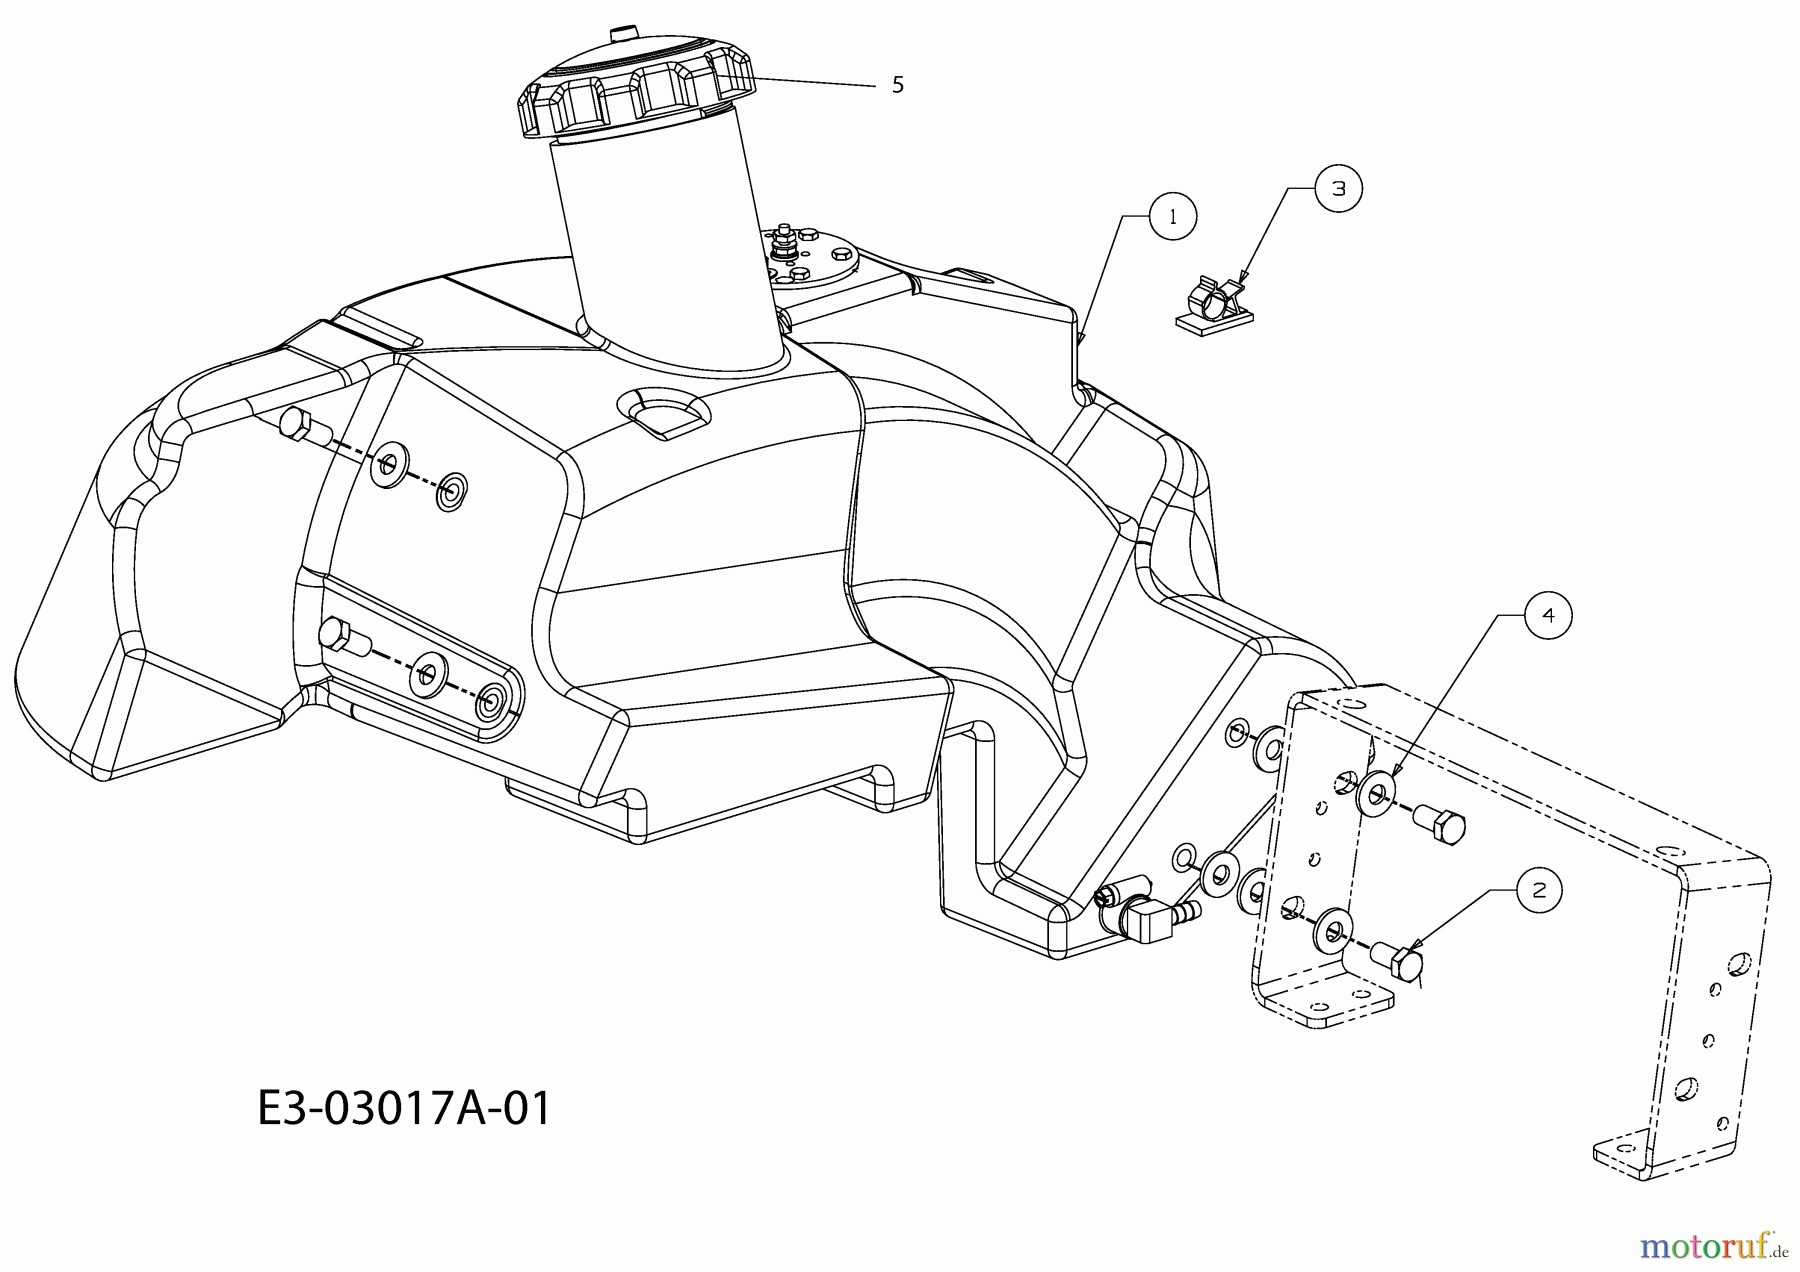  Cub Cadet Kompakttraktoren HDS 5264 54AE52L-603  (2007) Tank